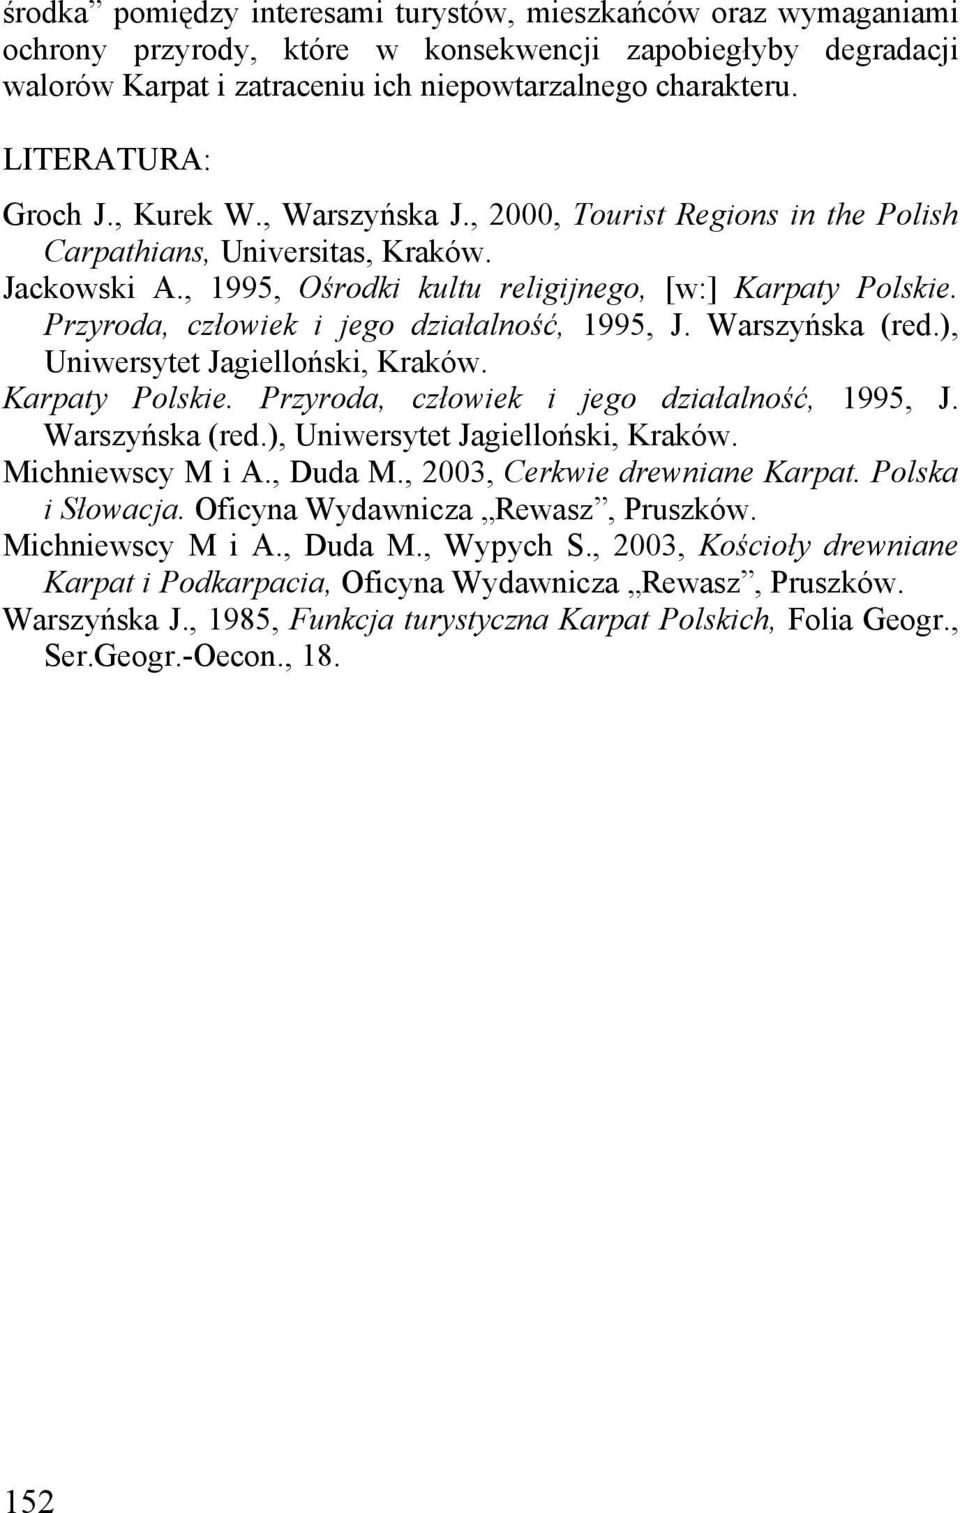 Przyroda, człowiek i jego działalność, 1995, J. Warszyńska (red.), Uniwersytet Jagielloński, Kraków. Karpaty Polskie. Przyroda, człowiek i jego działalność, 1995, J. Warszyńska (red.), Uniwersytet Jagielloński, Kraków. Michniewscy M i A.